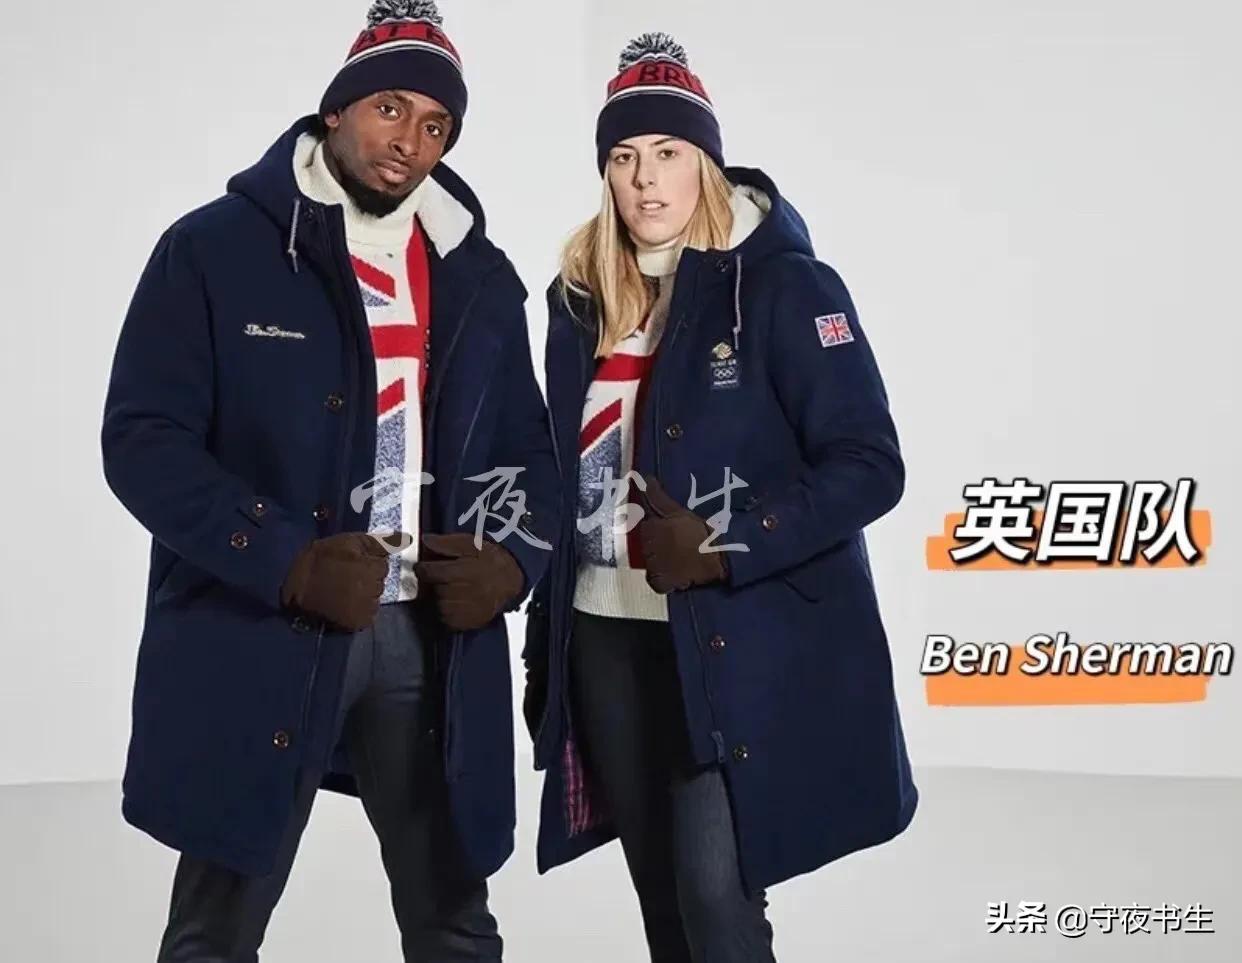 日本冬奥队服品牌图片